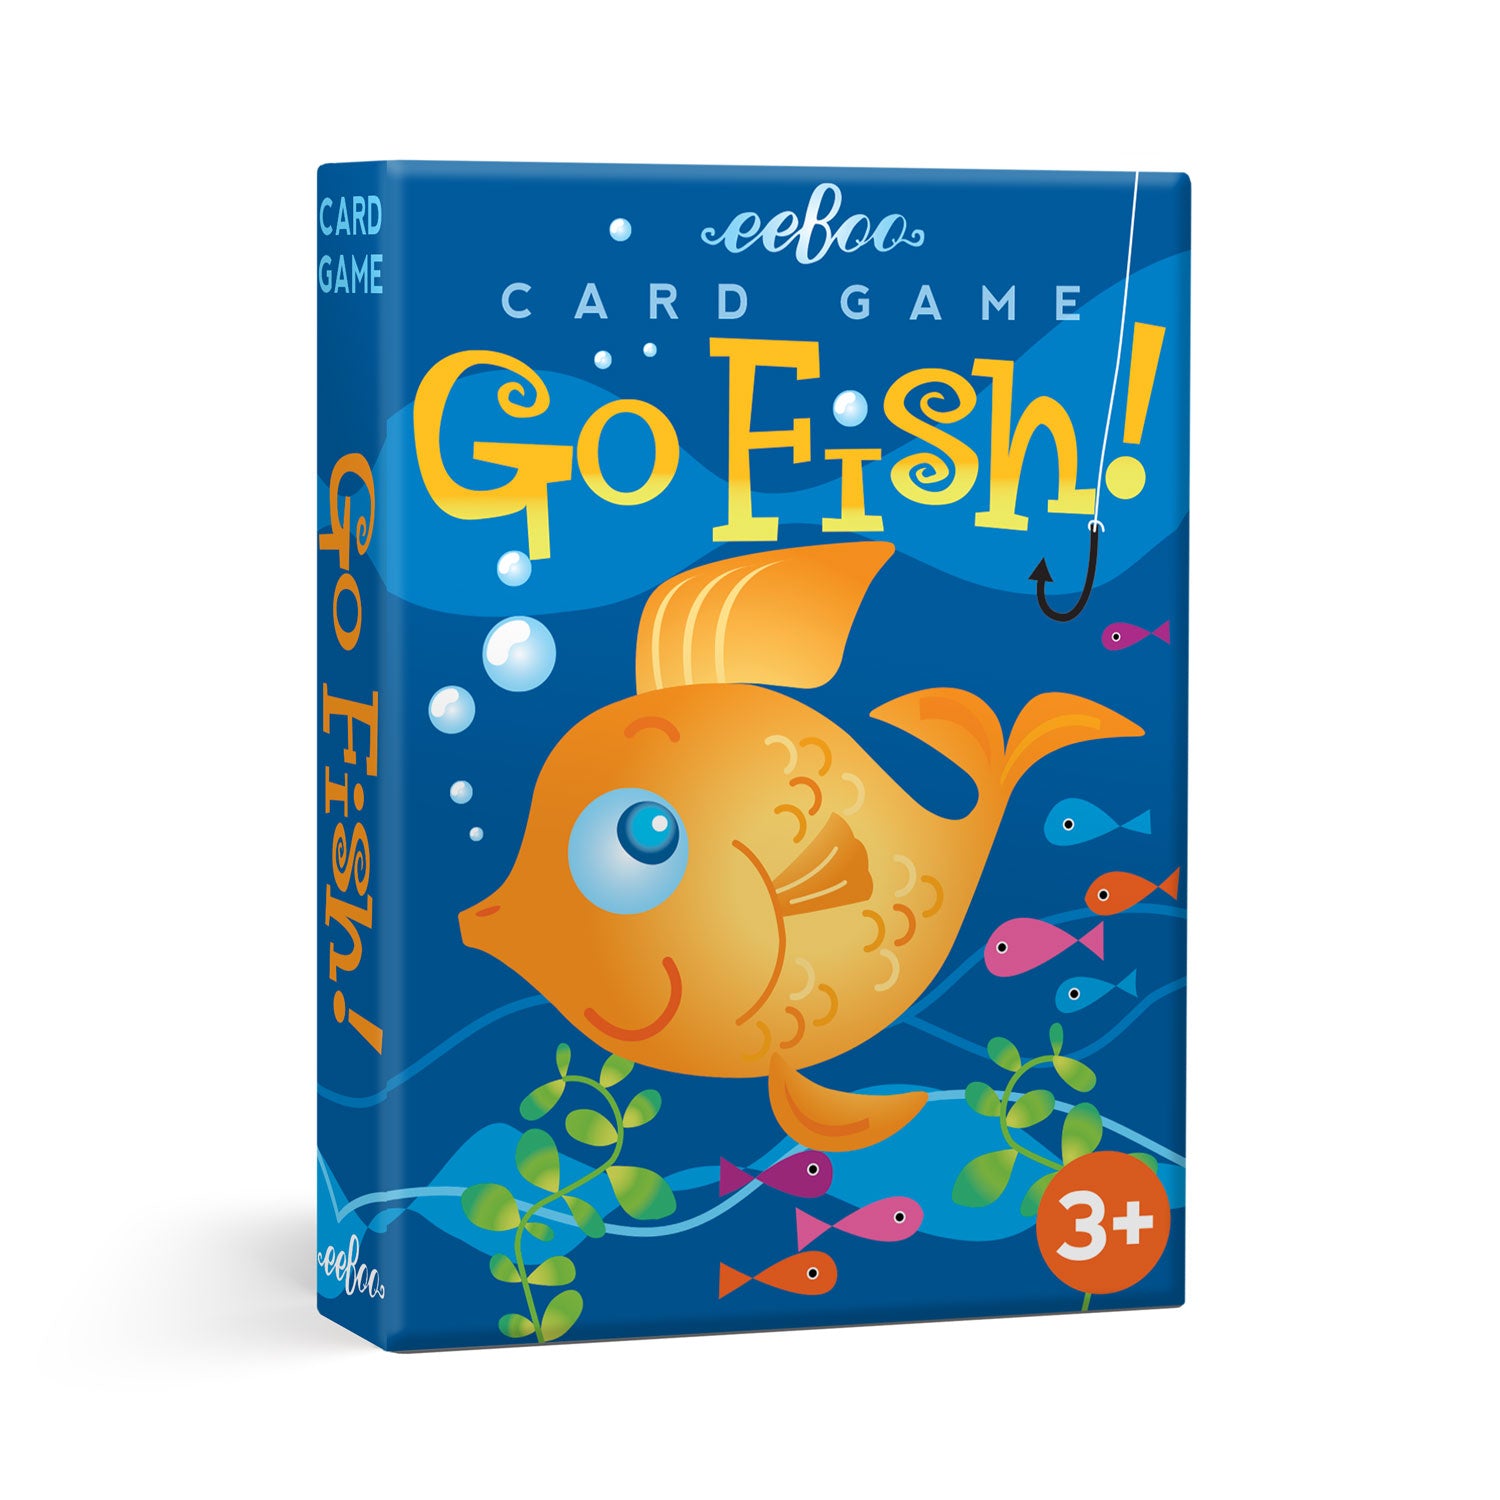 Drawn Series & Big Fish Games Guide